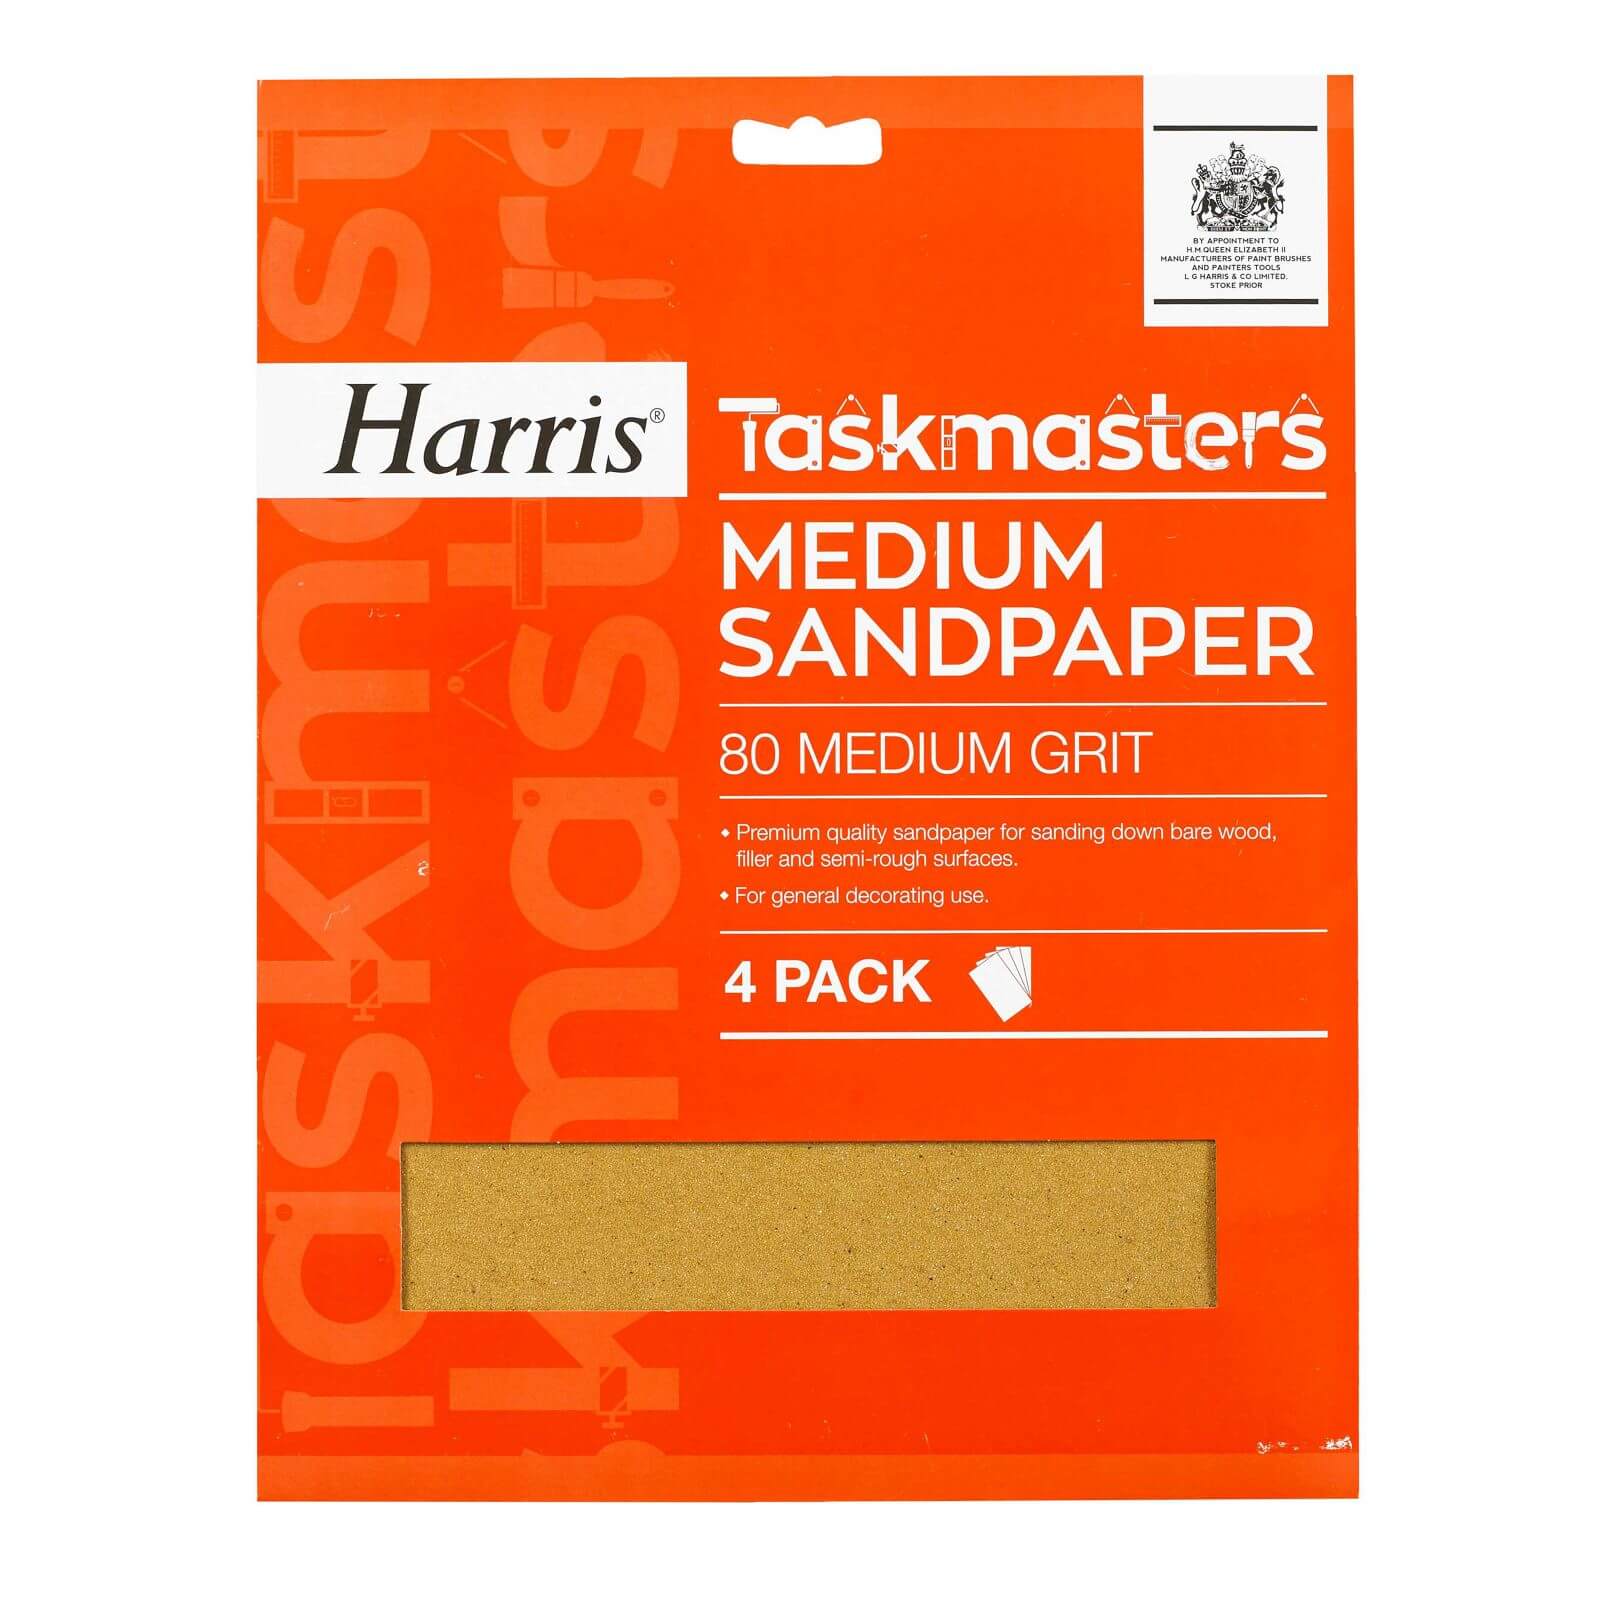 Harris Taskmasters Medium Sandpaper - 4 Pack